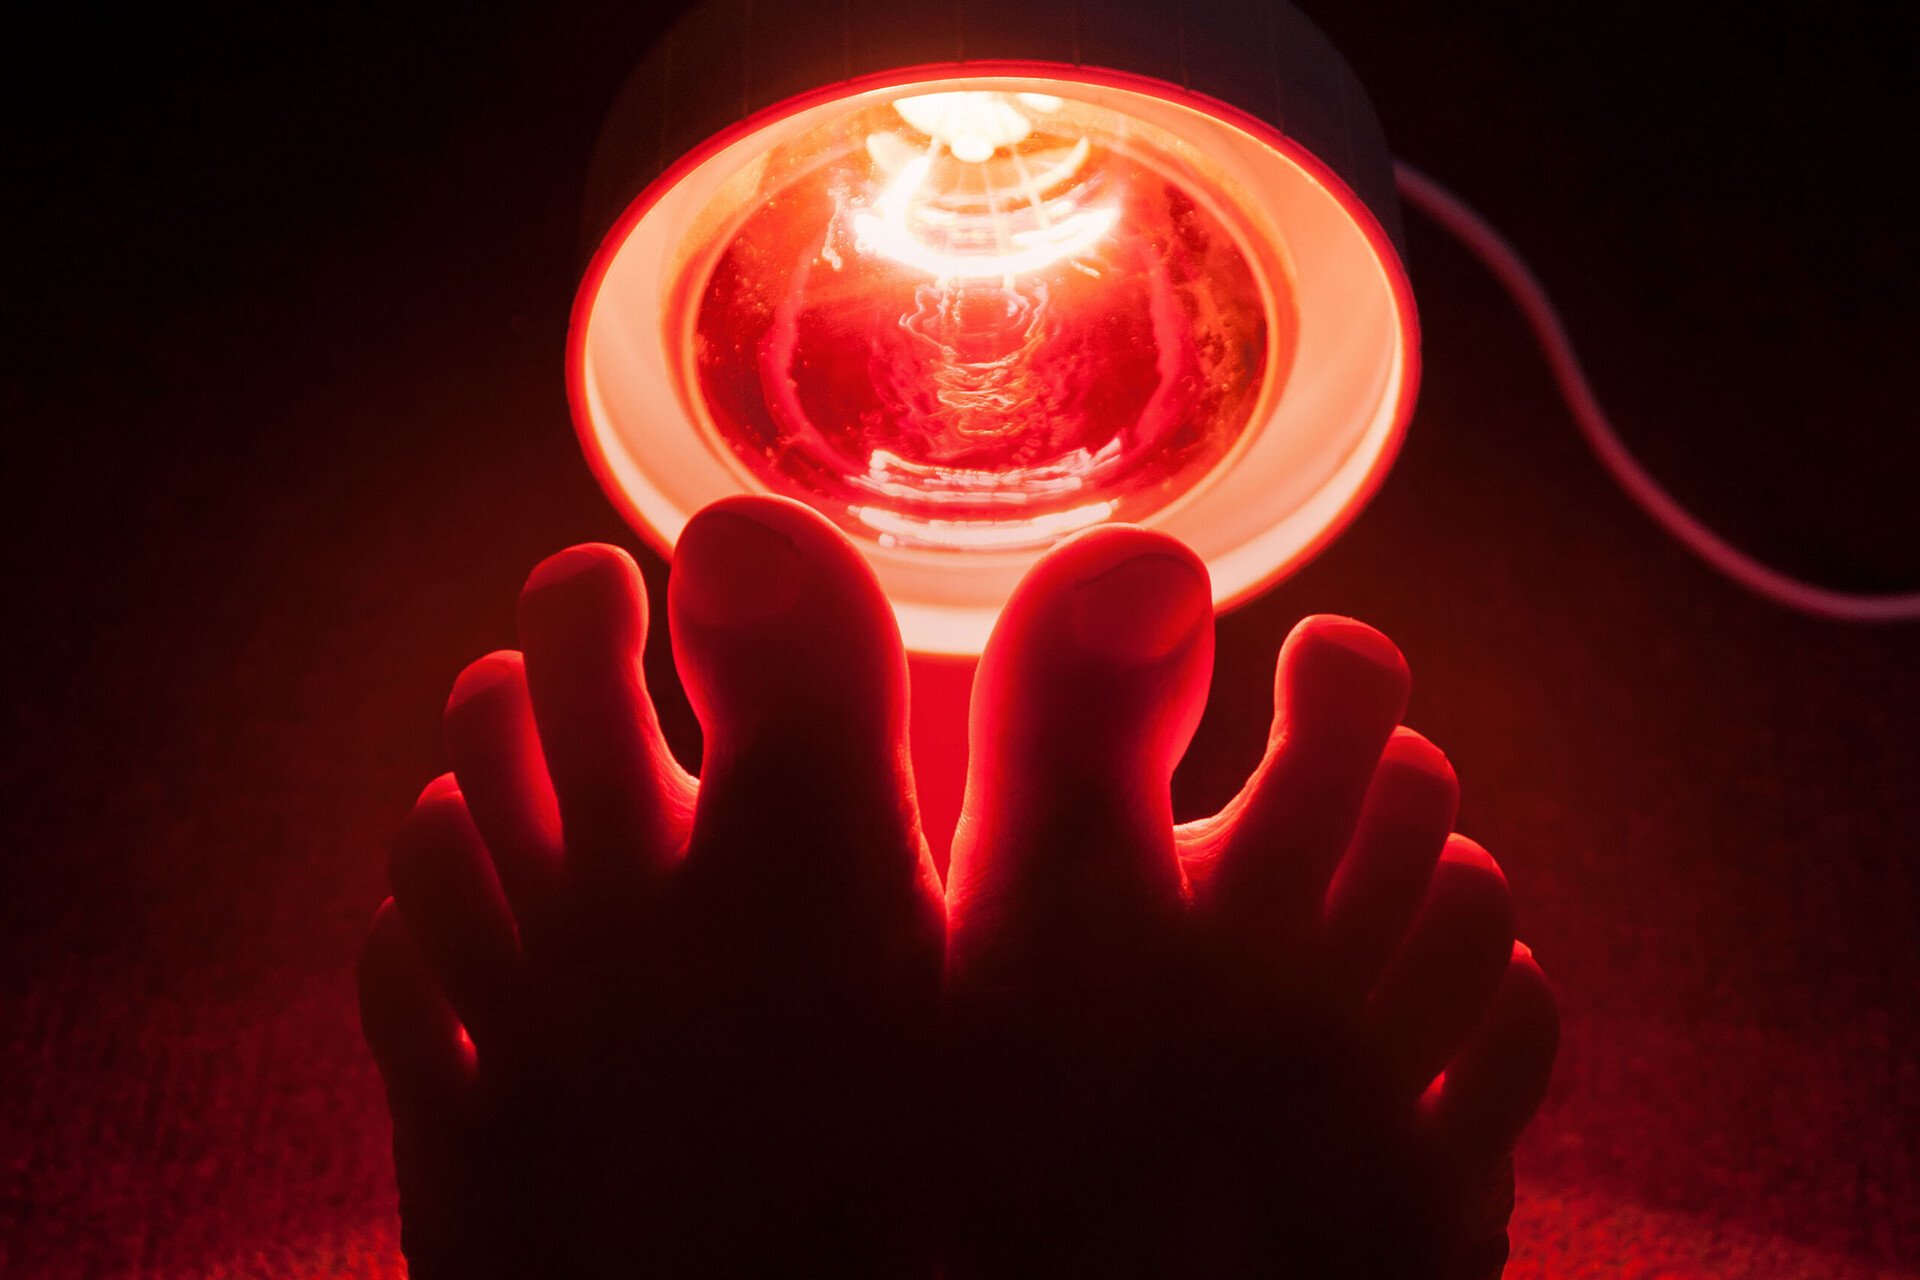 Eine effektive Wärmebehandlung gelingt mit einer speziellen Wärmelampe. Das Bild zeigt zwei Füße vor dem roten Licht.